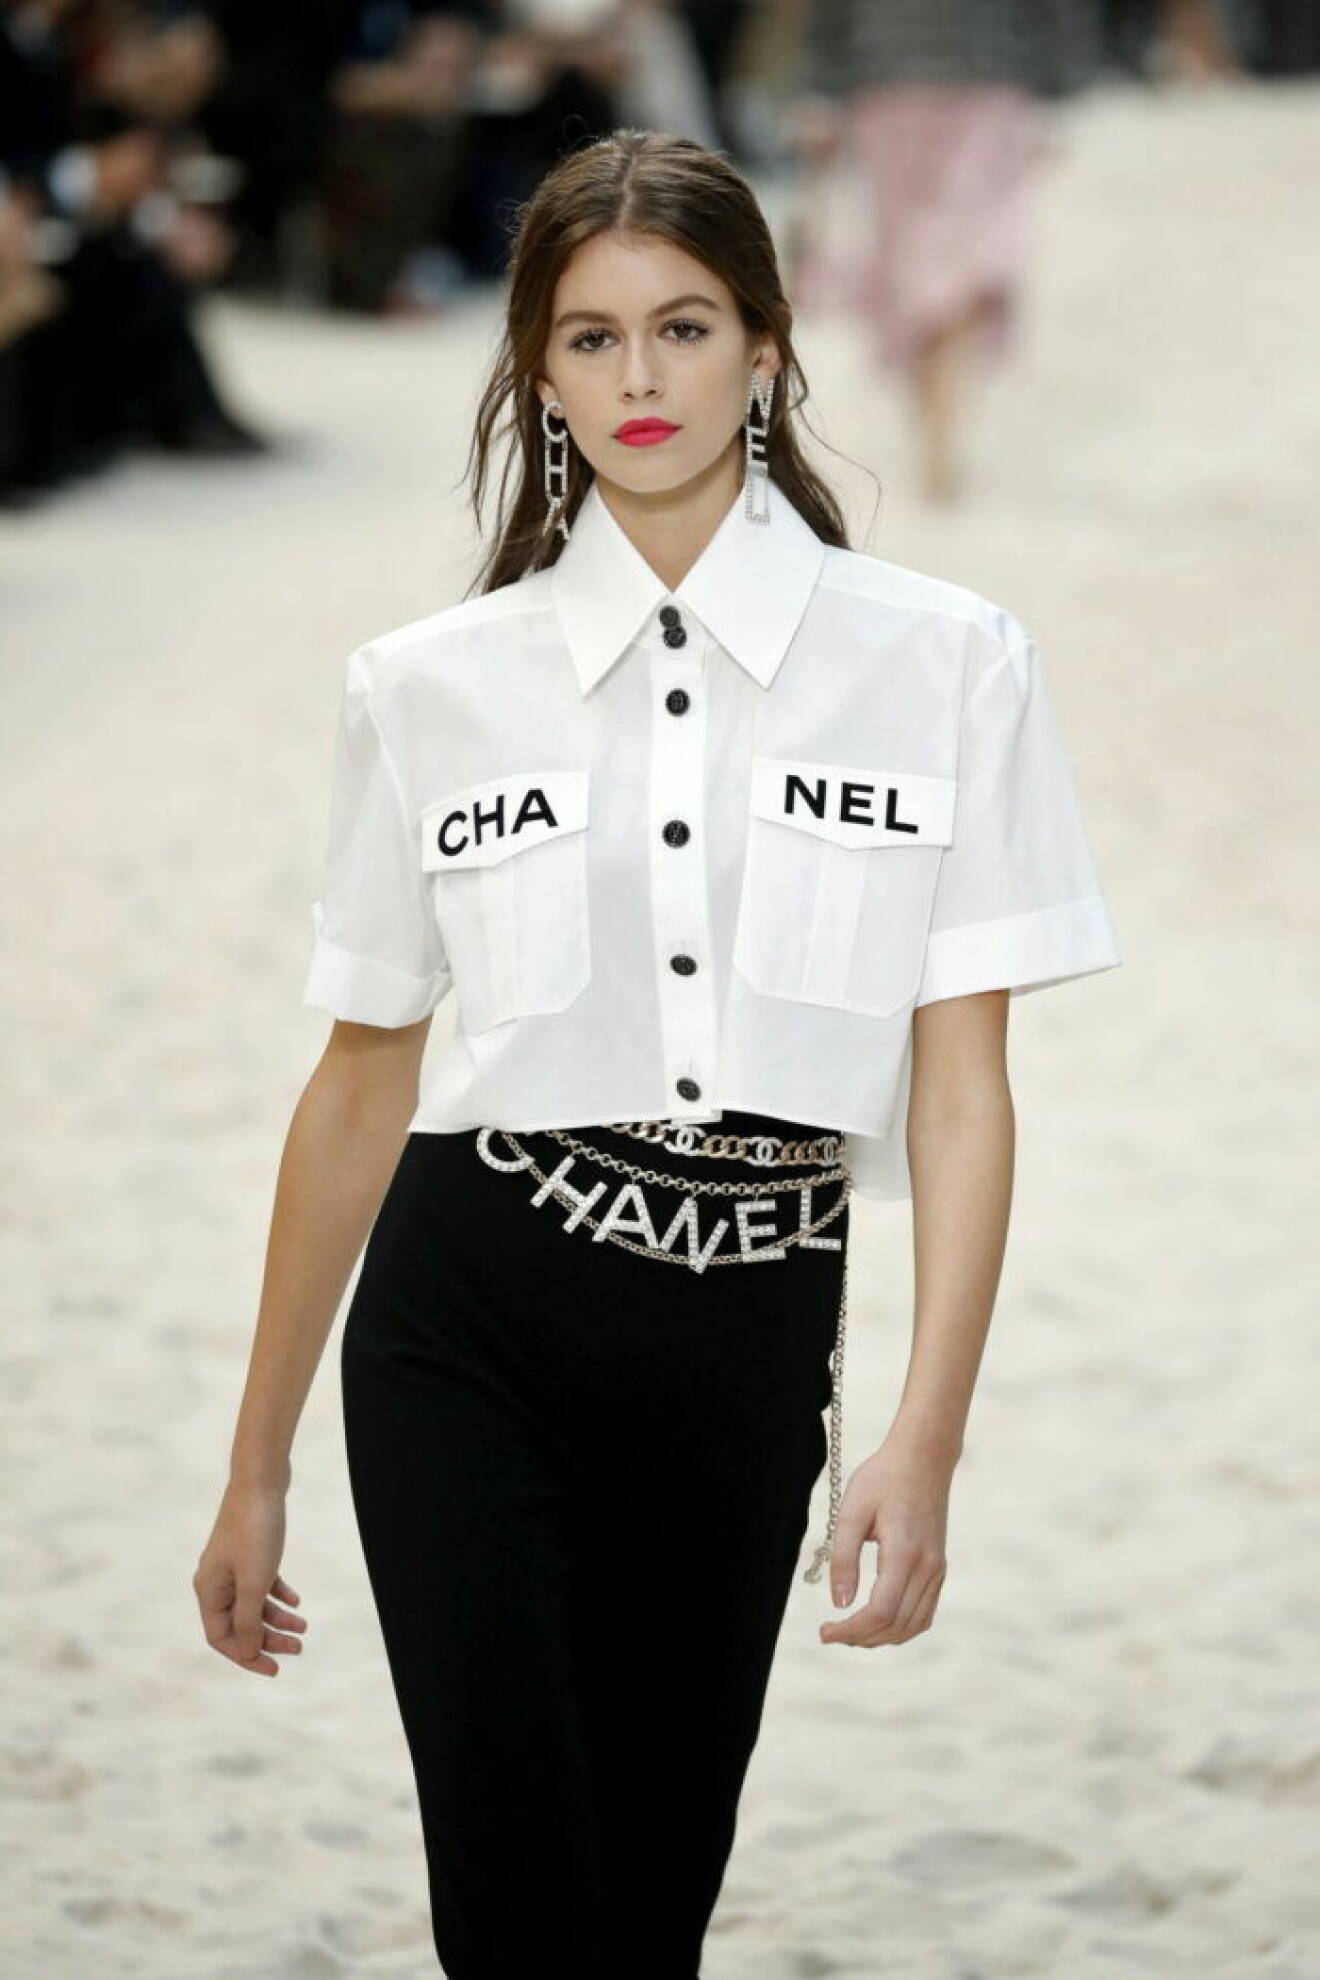 Karl Lagerfelds visning för Chanel 2019, vit skjorta med chaneltryck och ett glittrigt chanelbälte.